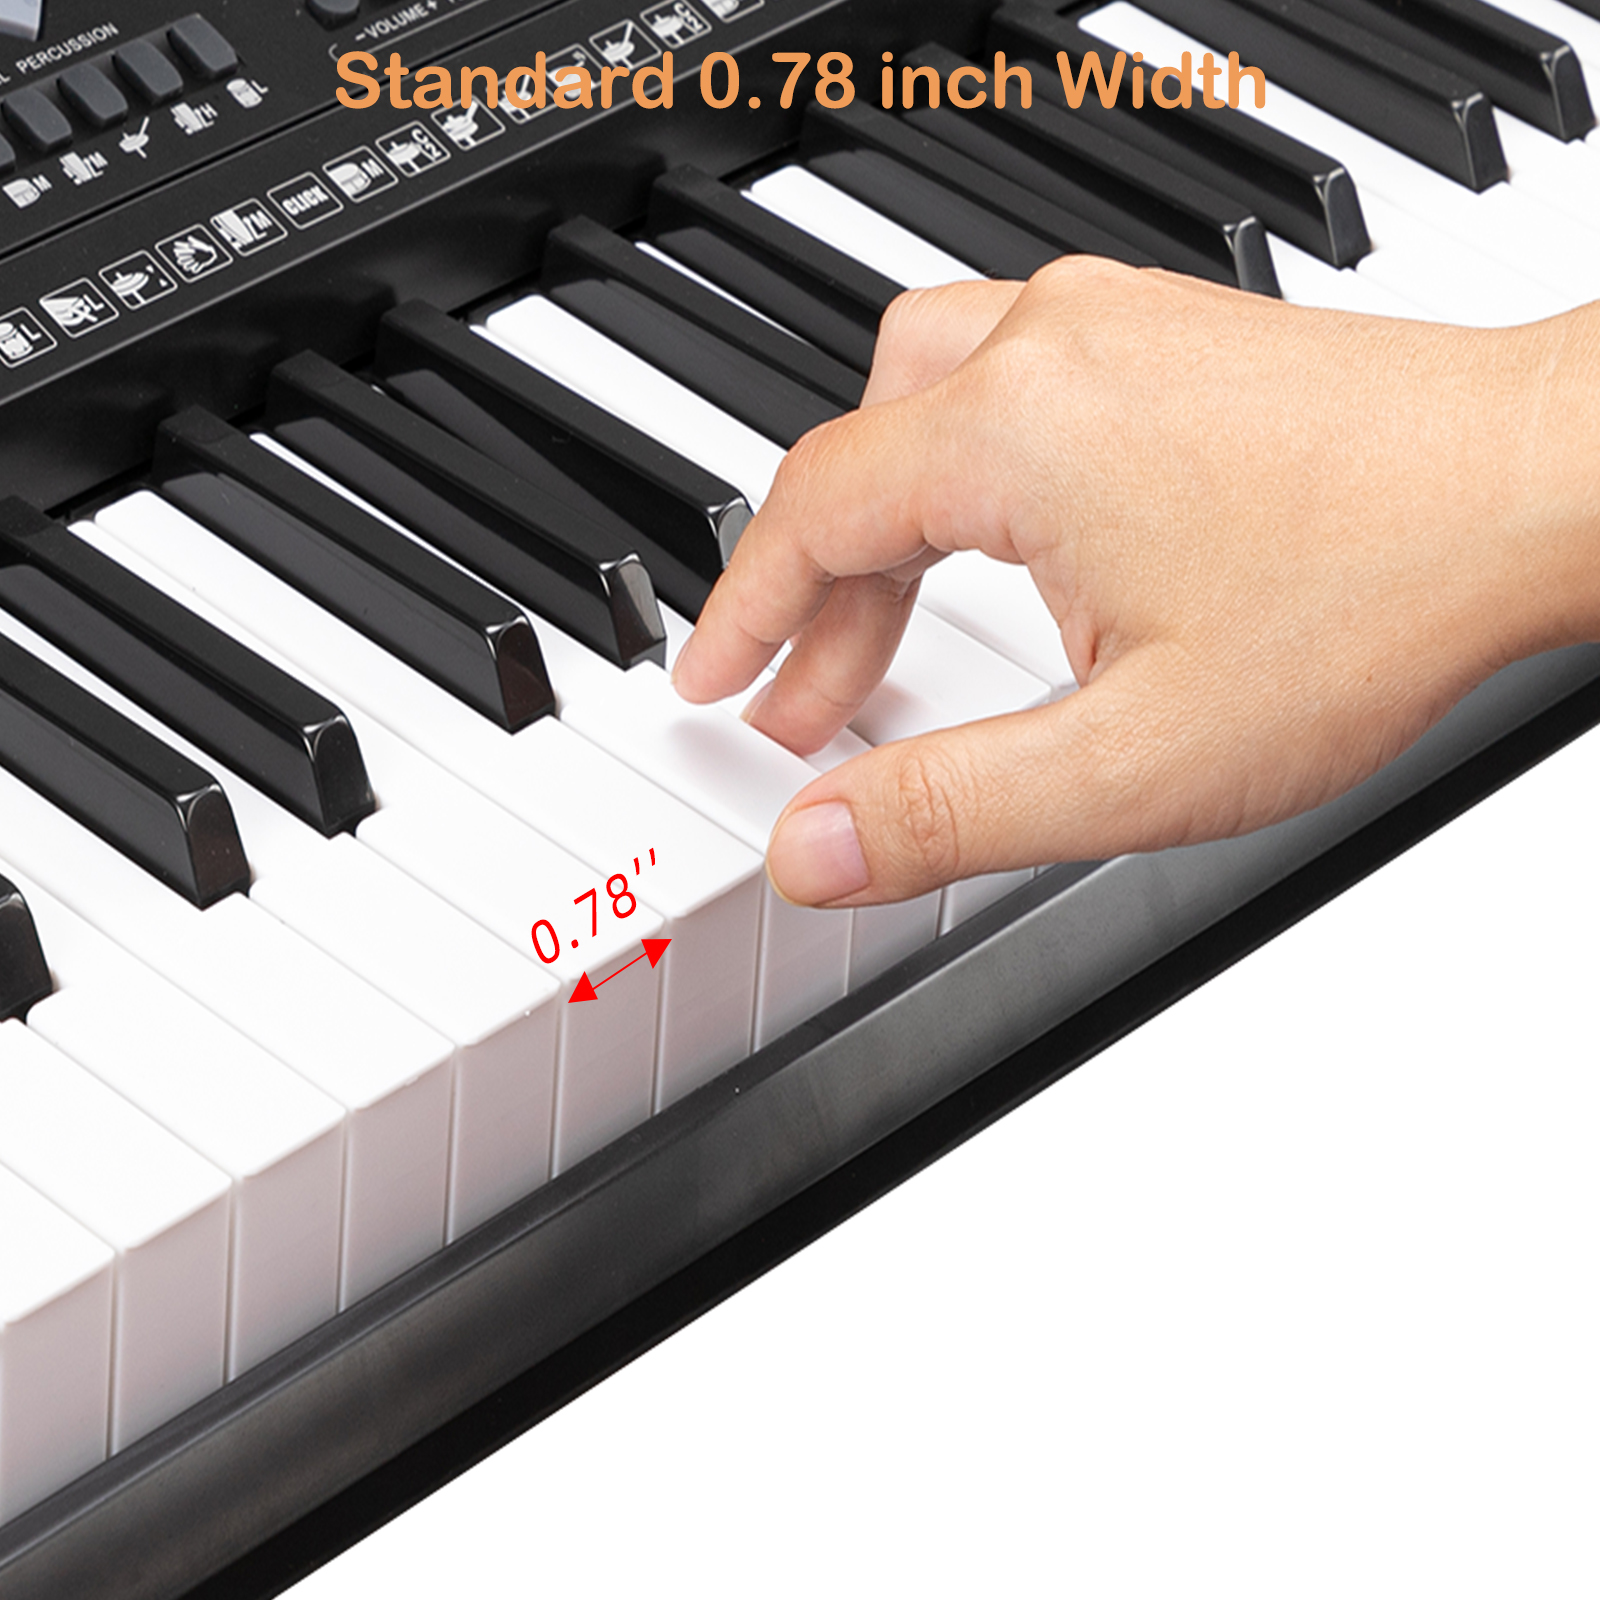 Piano numérique portable Clavier Piano 61 touches Synthétiseur Divarte  G1000 avec haut-parleurs intégrés. 16 sons dont… : acheter des objets  Beatles, Lennon, McCartney, Starr et Harrison